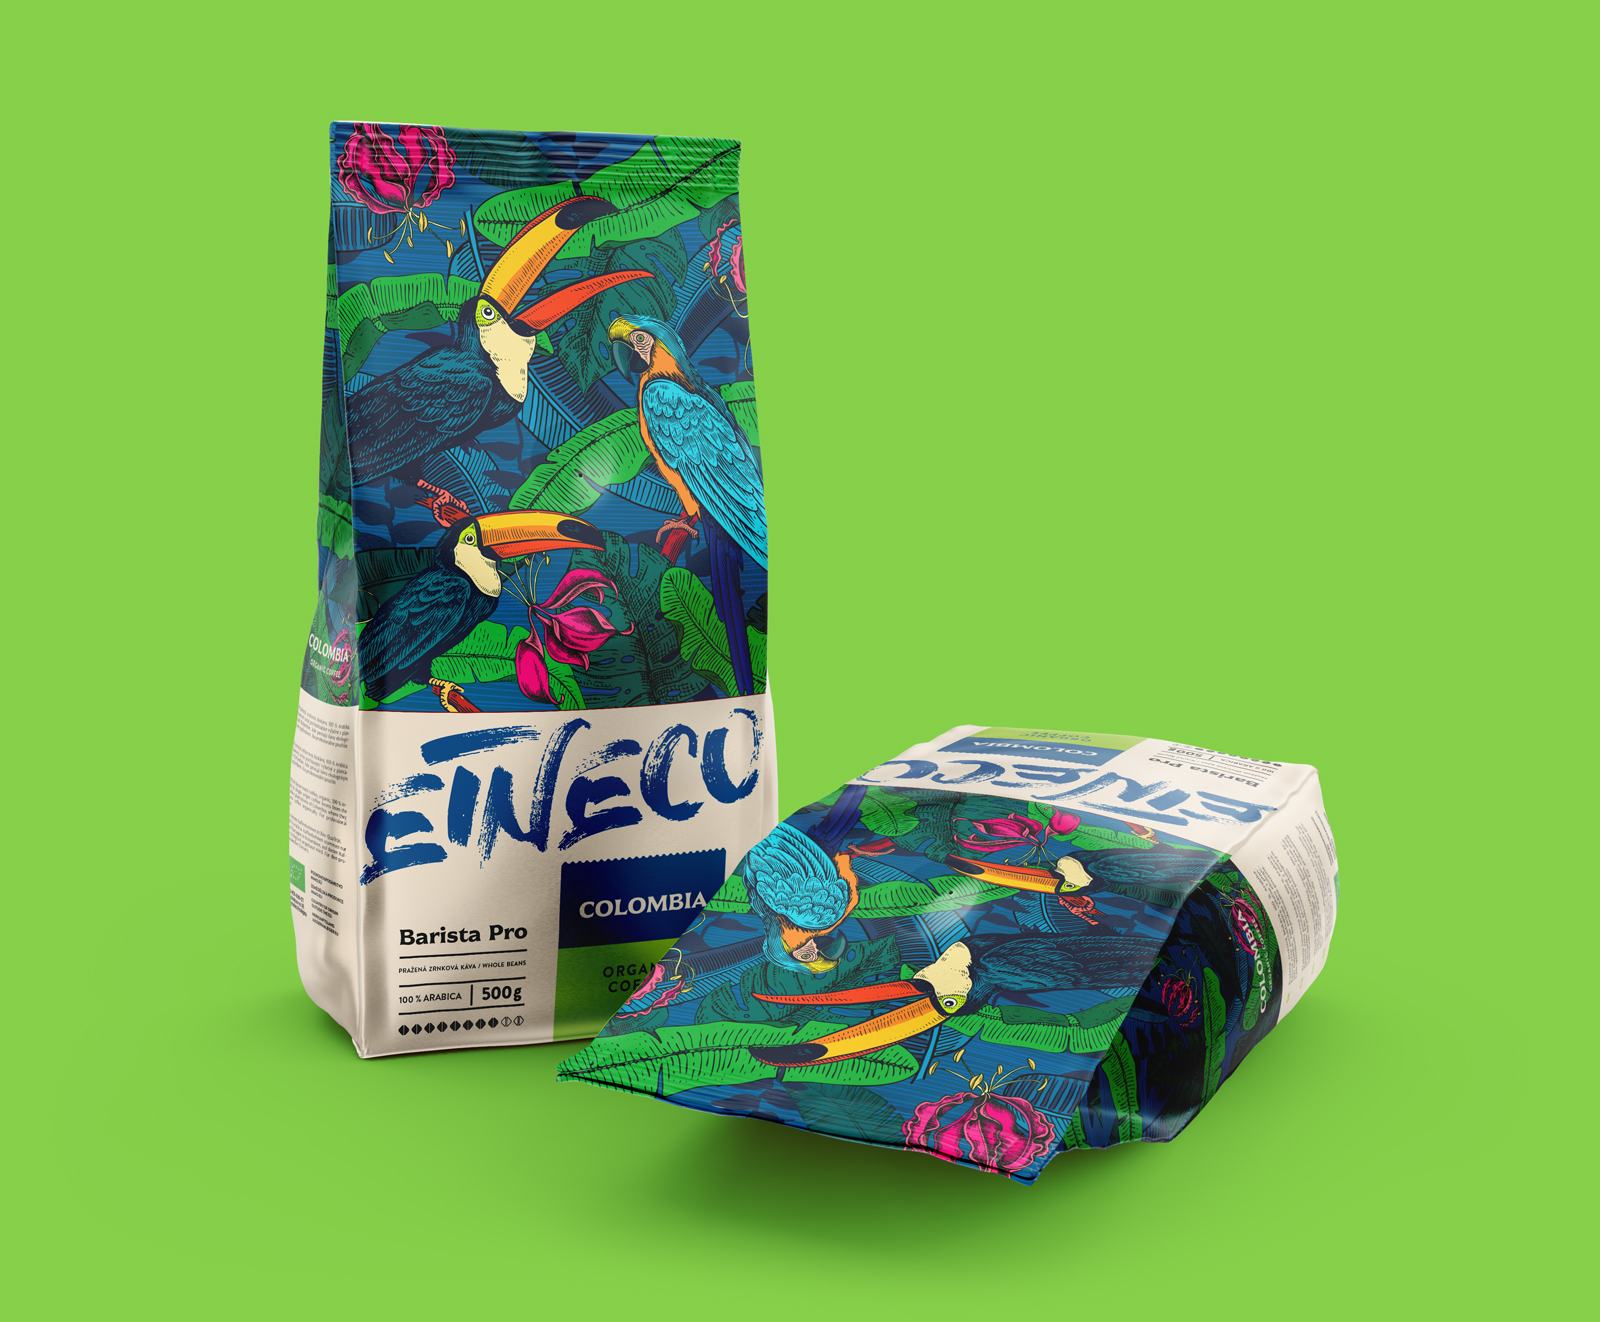 Etneco咖啡包装设计